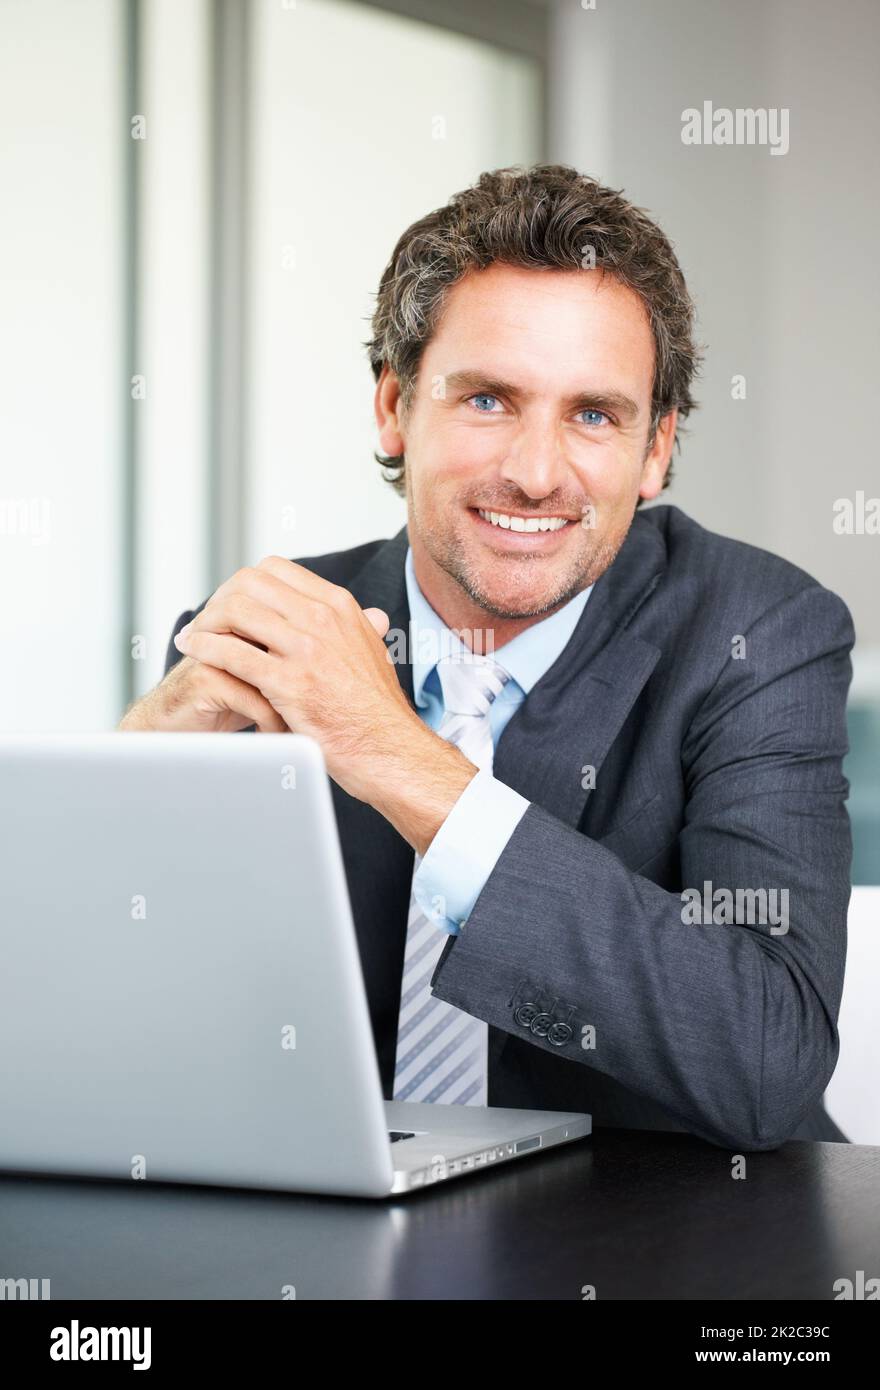 Sonriente hombre de negocios con portátil. Retrato de un hombre de negocios con un portátil y una cálida sonrisa. Foto de stock